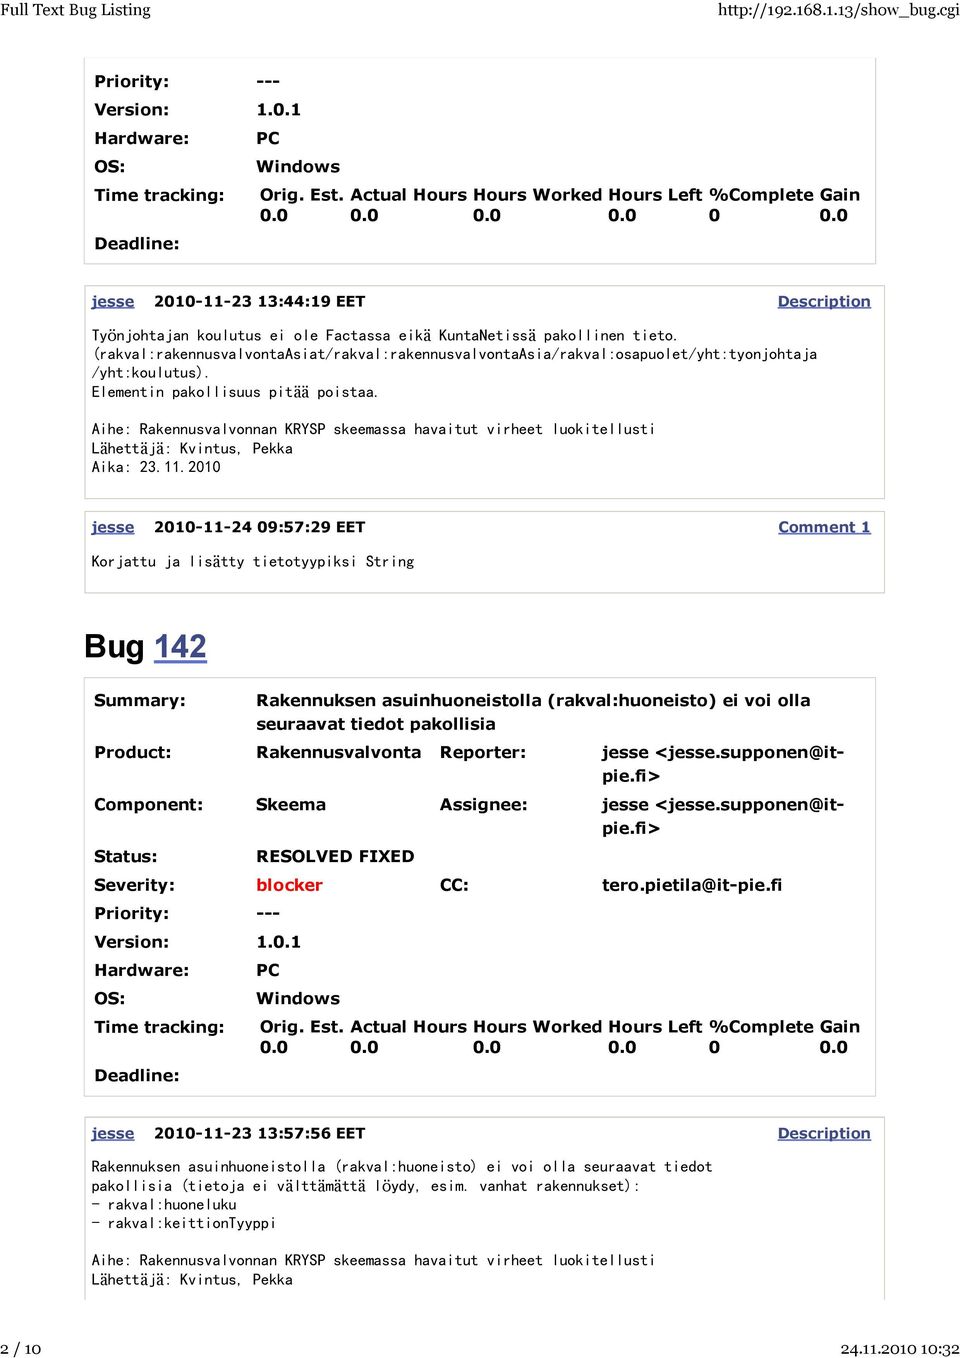 jesse 2010-11-24 09:57:29 EET Korjattu ja lisätty tietotyypiksi String Bug 142 Rakennuksen asuinhuoneistolla (rakval:huoneisto) ei voi olla seuraavat tiedot